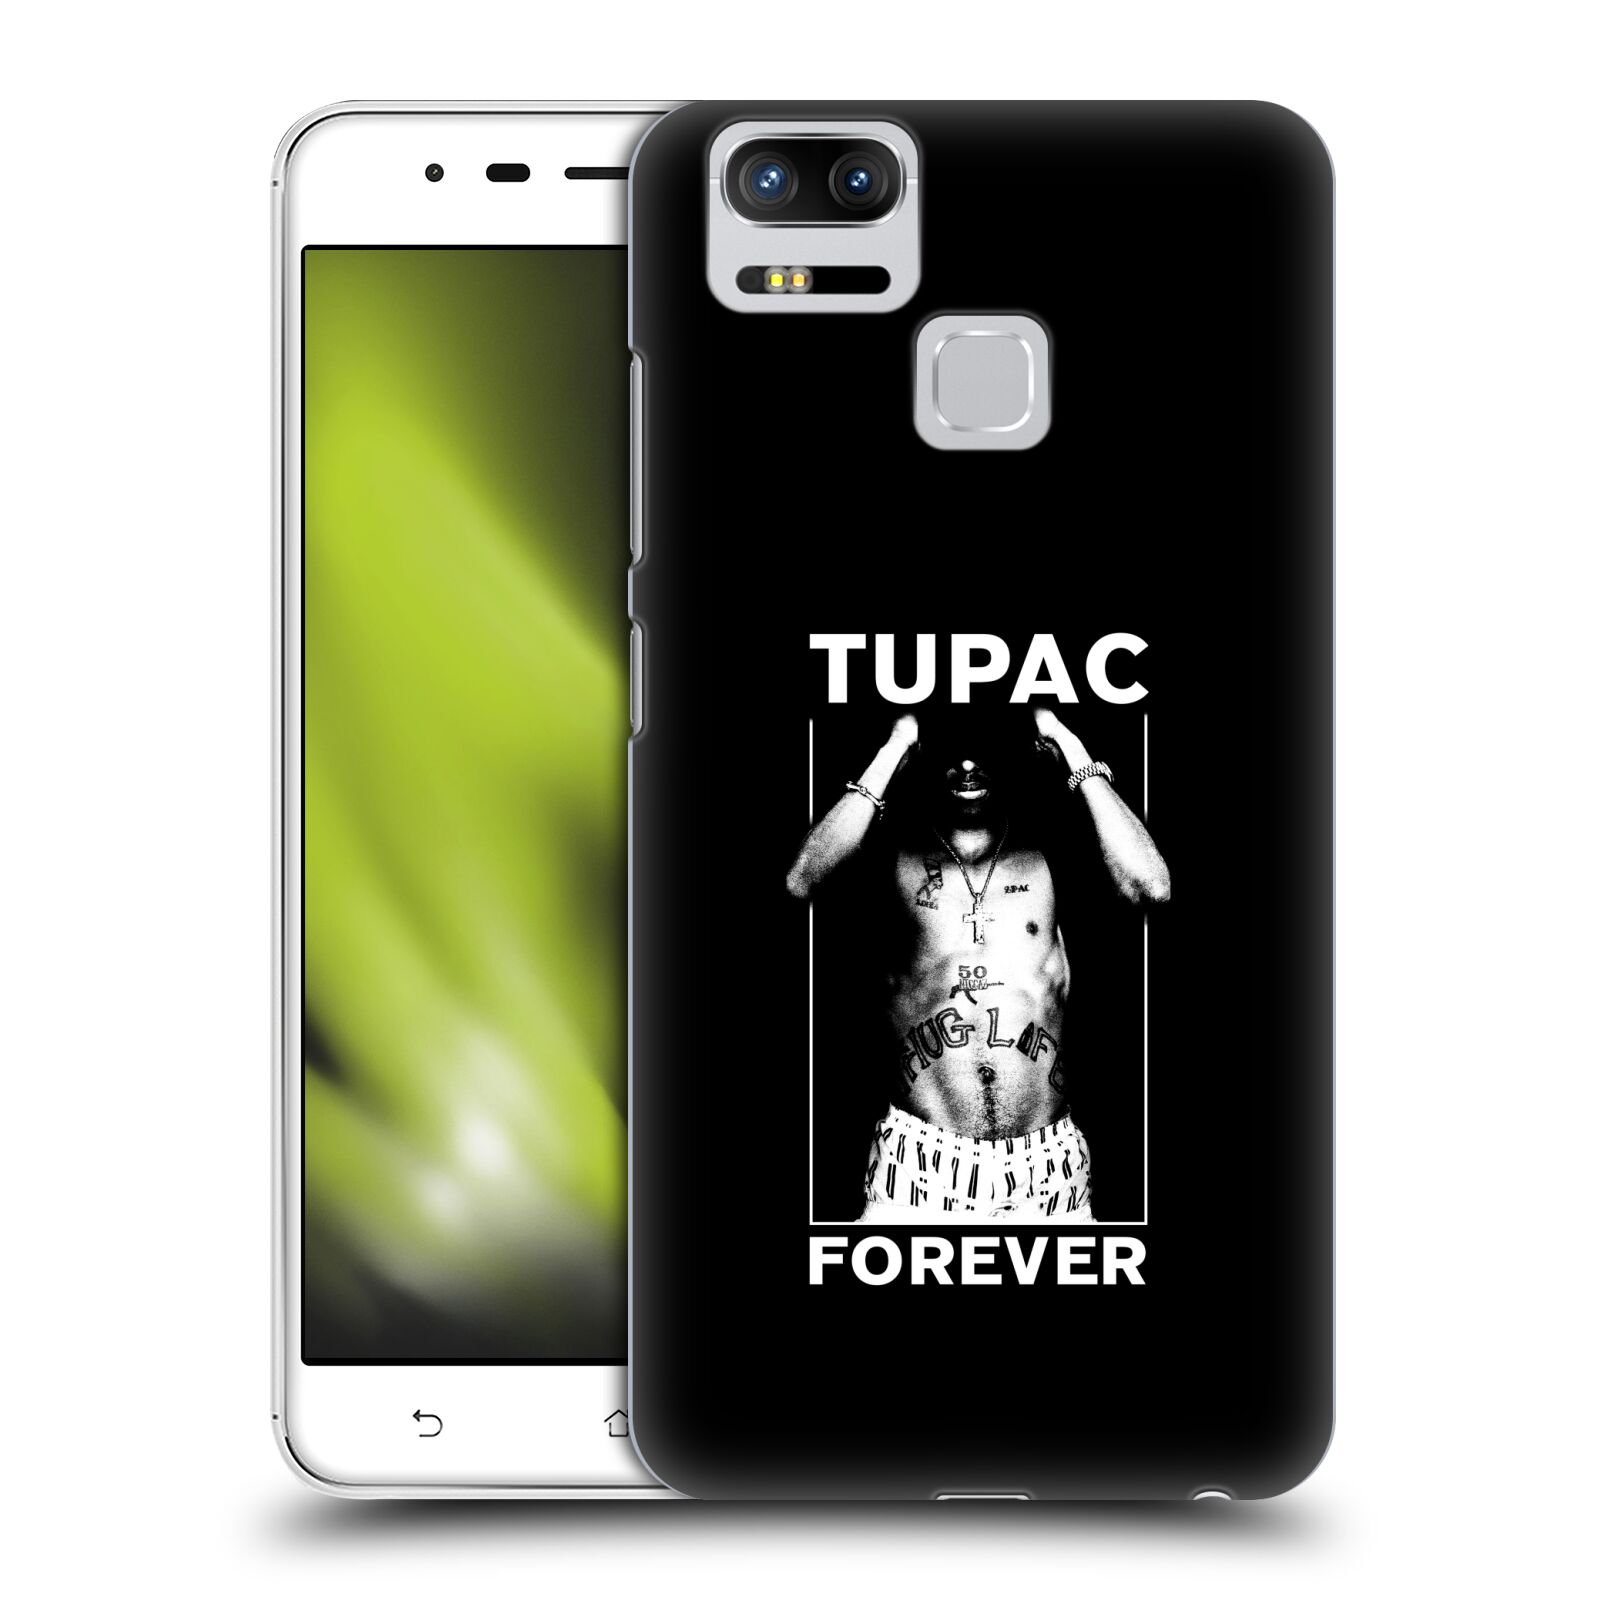 HEAD CASE plastový obal na mobil Asus Zenfone 3 Zoom ZE553KL Zpěvák rapper Tupac Shakur 2Pac bílý popisek FOREVER